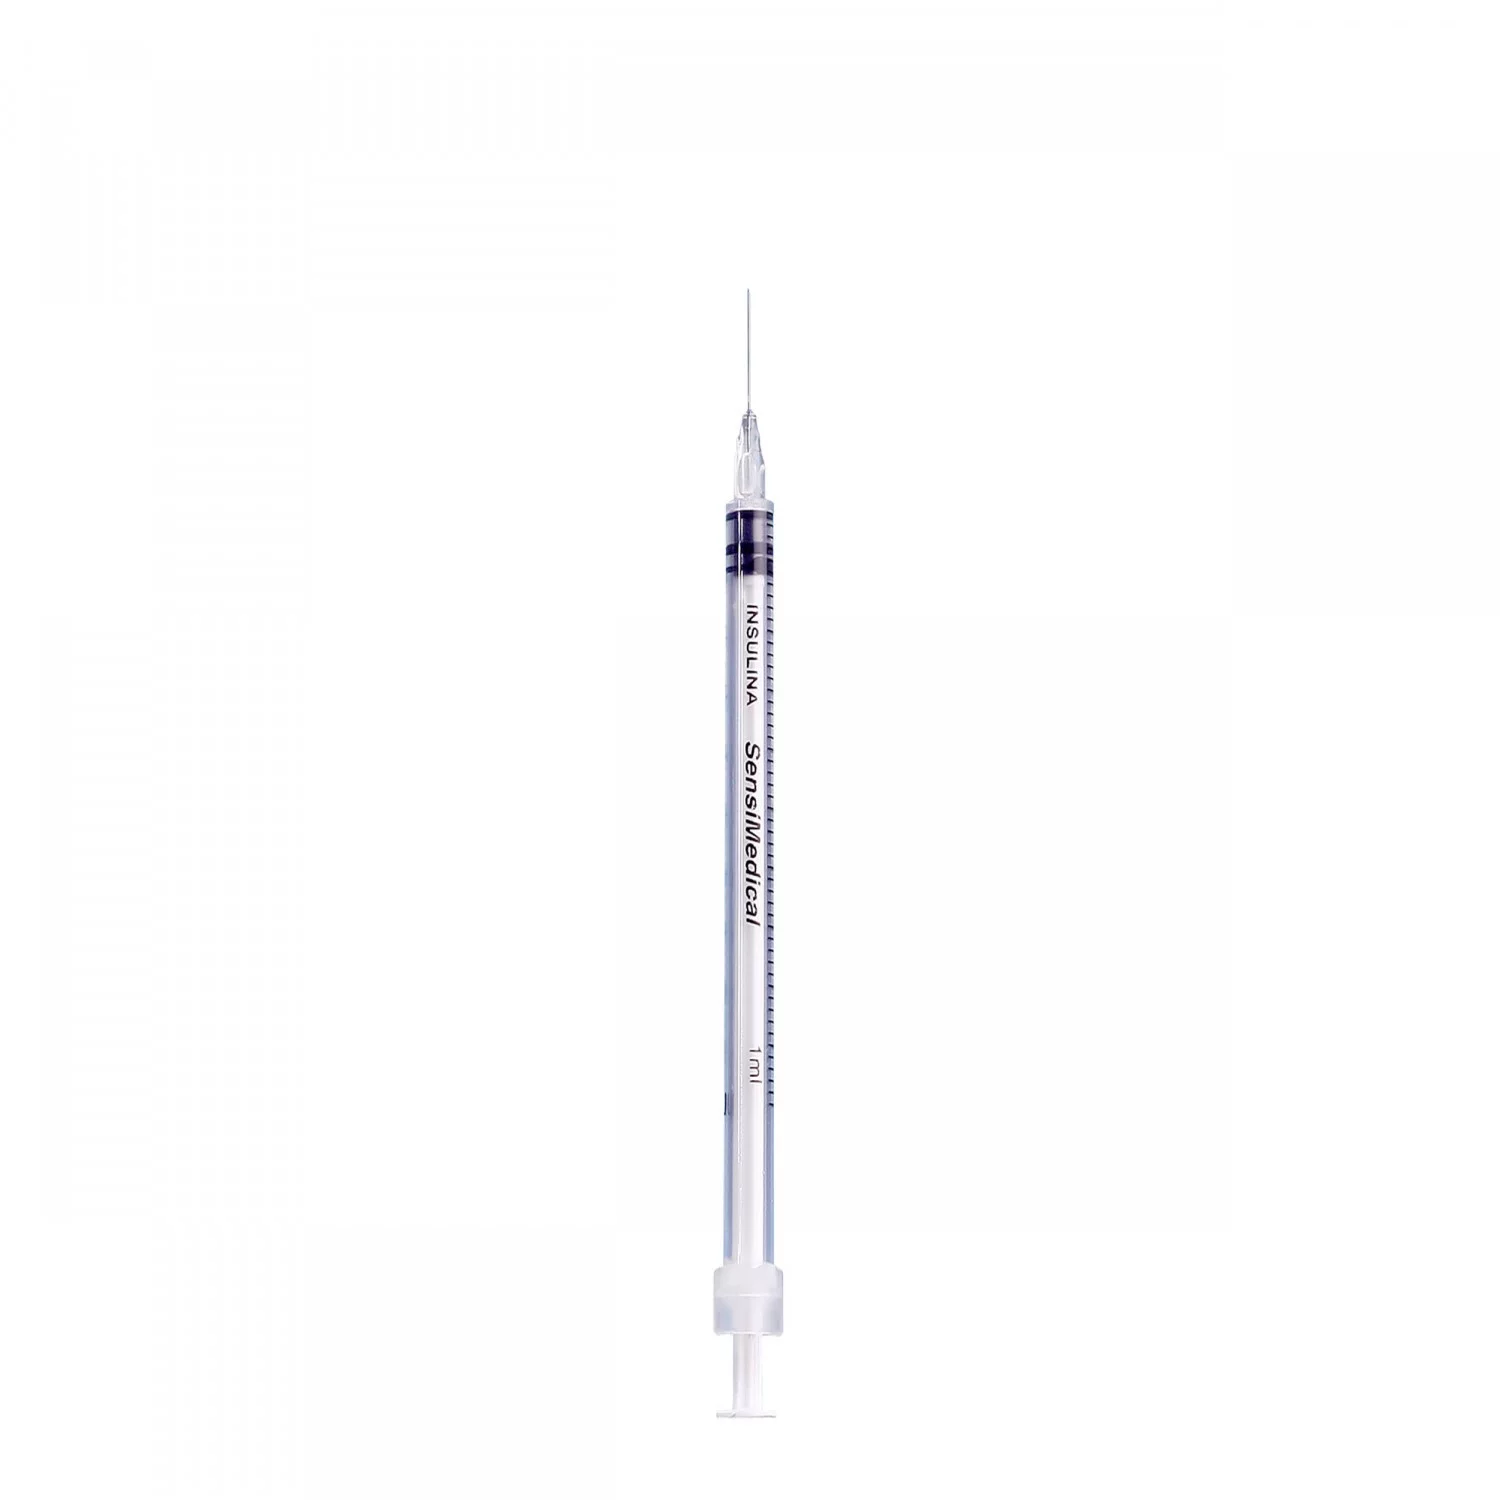 Jeringas Para Insulina 1ml 29gx13mm, Caja Con 200 Piezas 